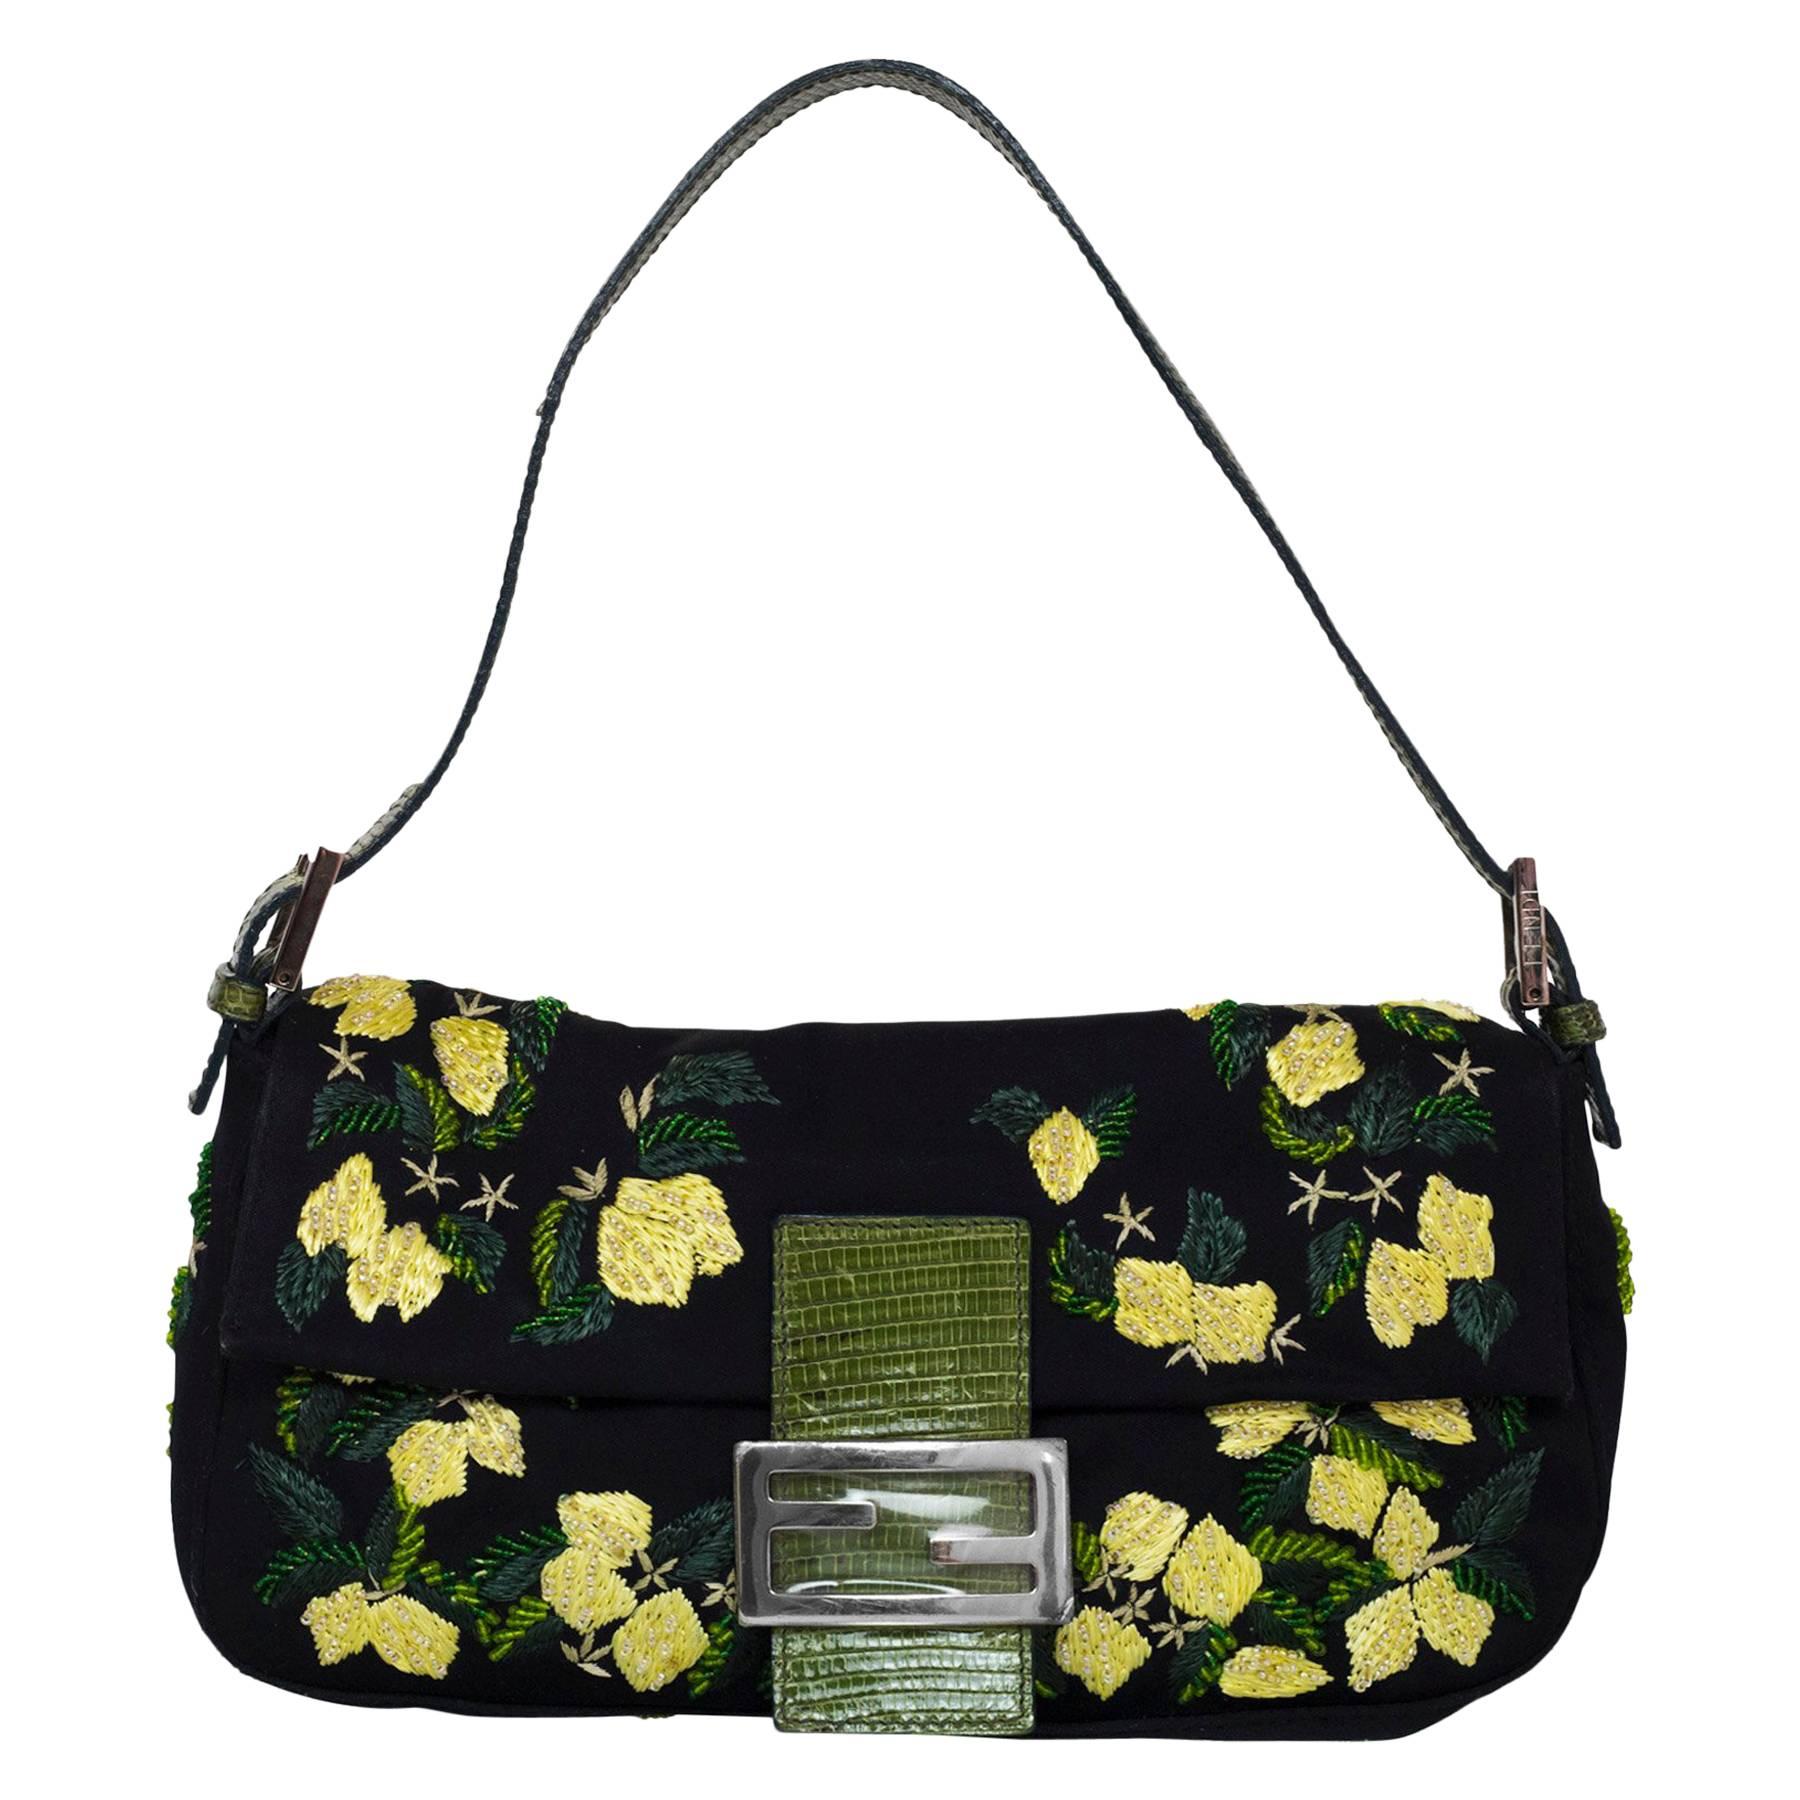 Fendi Black & Yellow Beaded Floral Baguette Bag